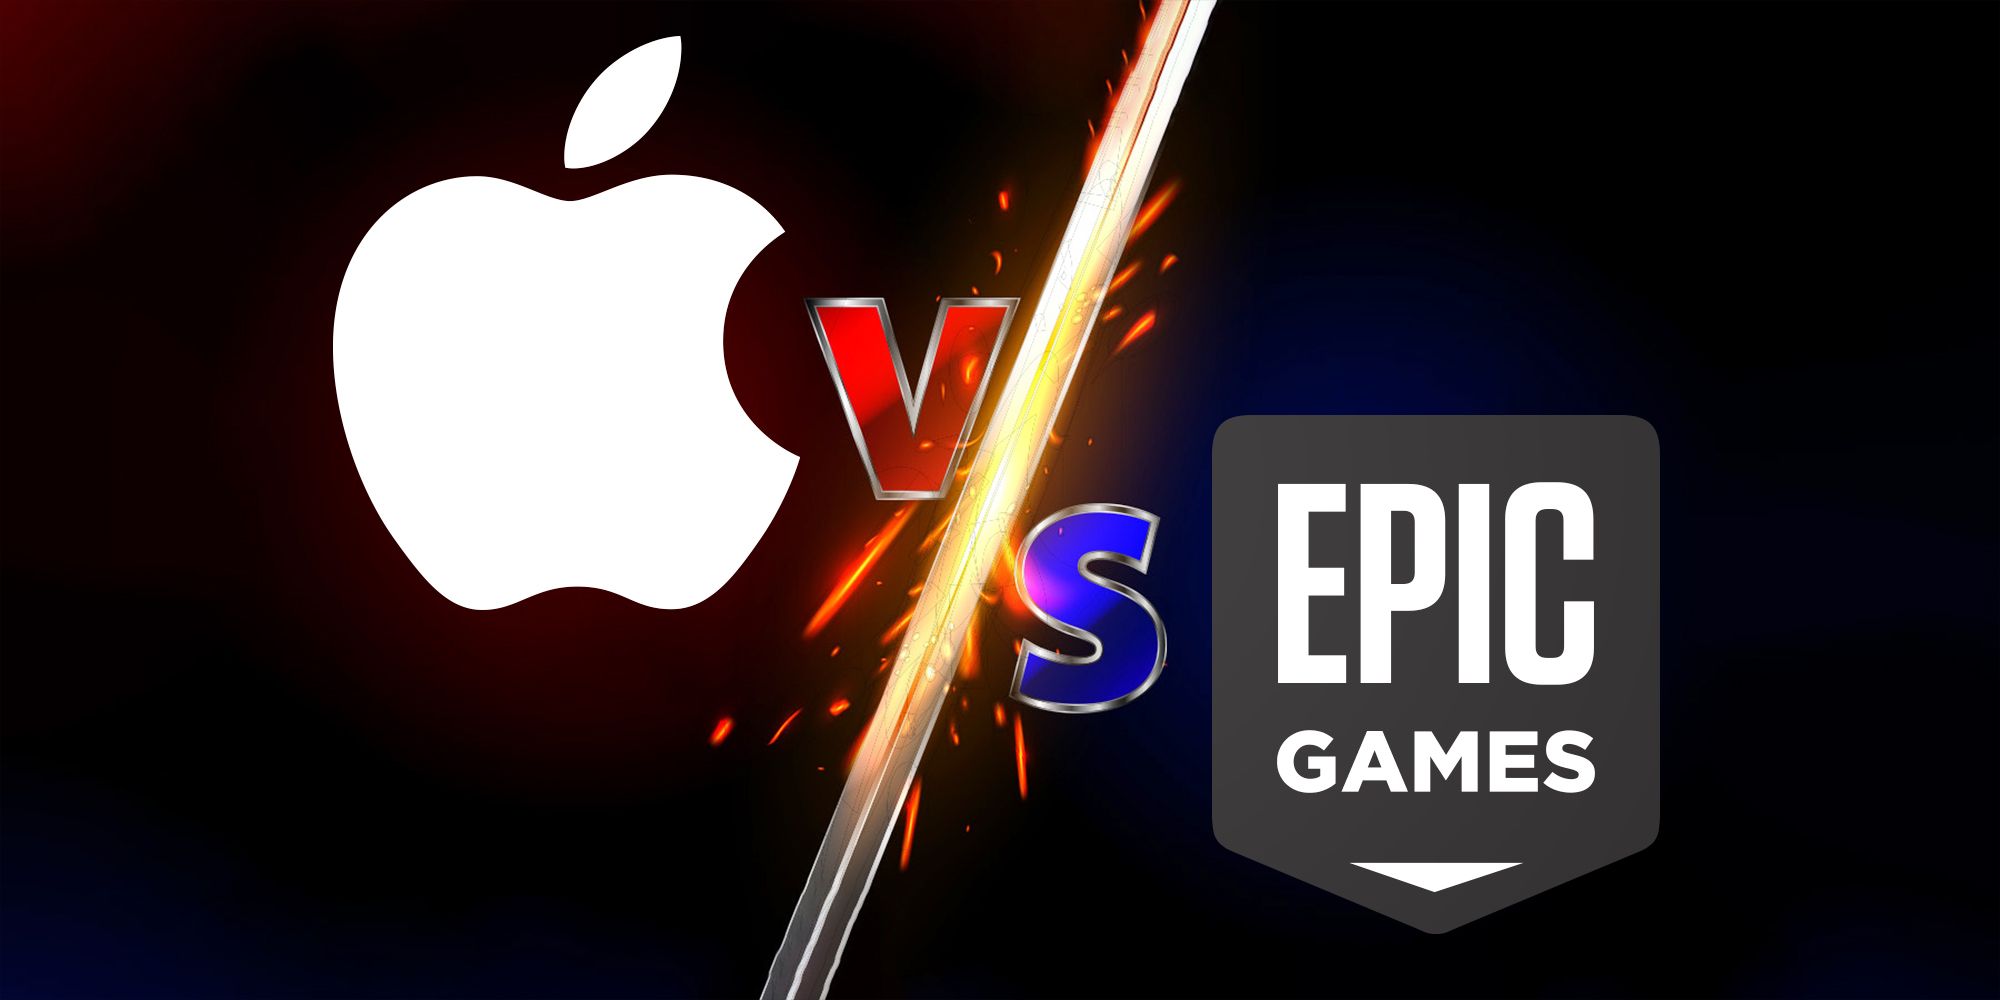 Apple Countersues 'Fortnite' Maker Epic Games, Seeks Punitive Damages - WSJ